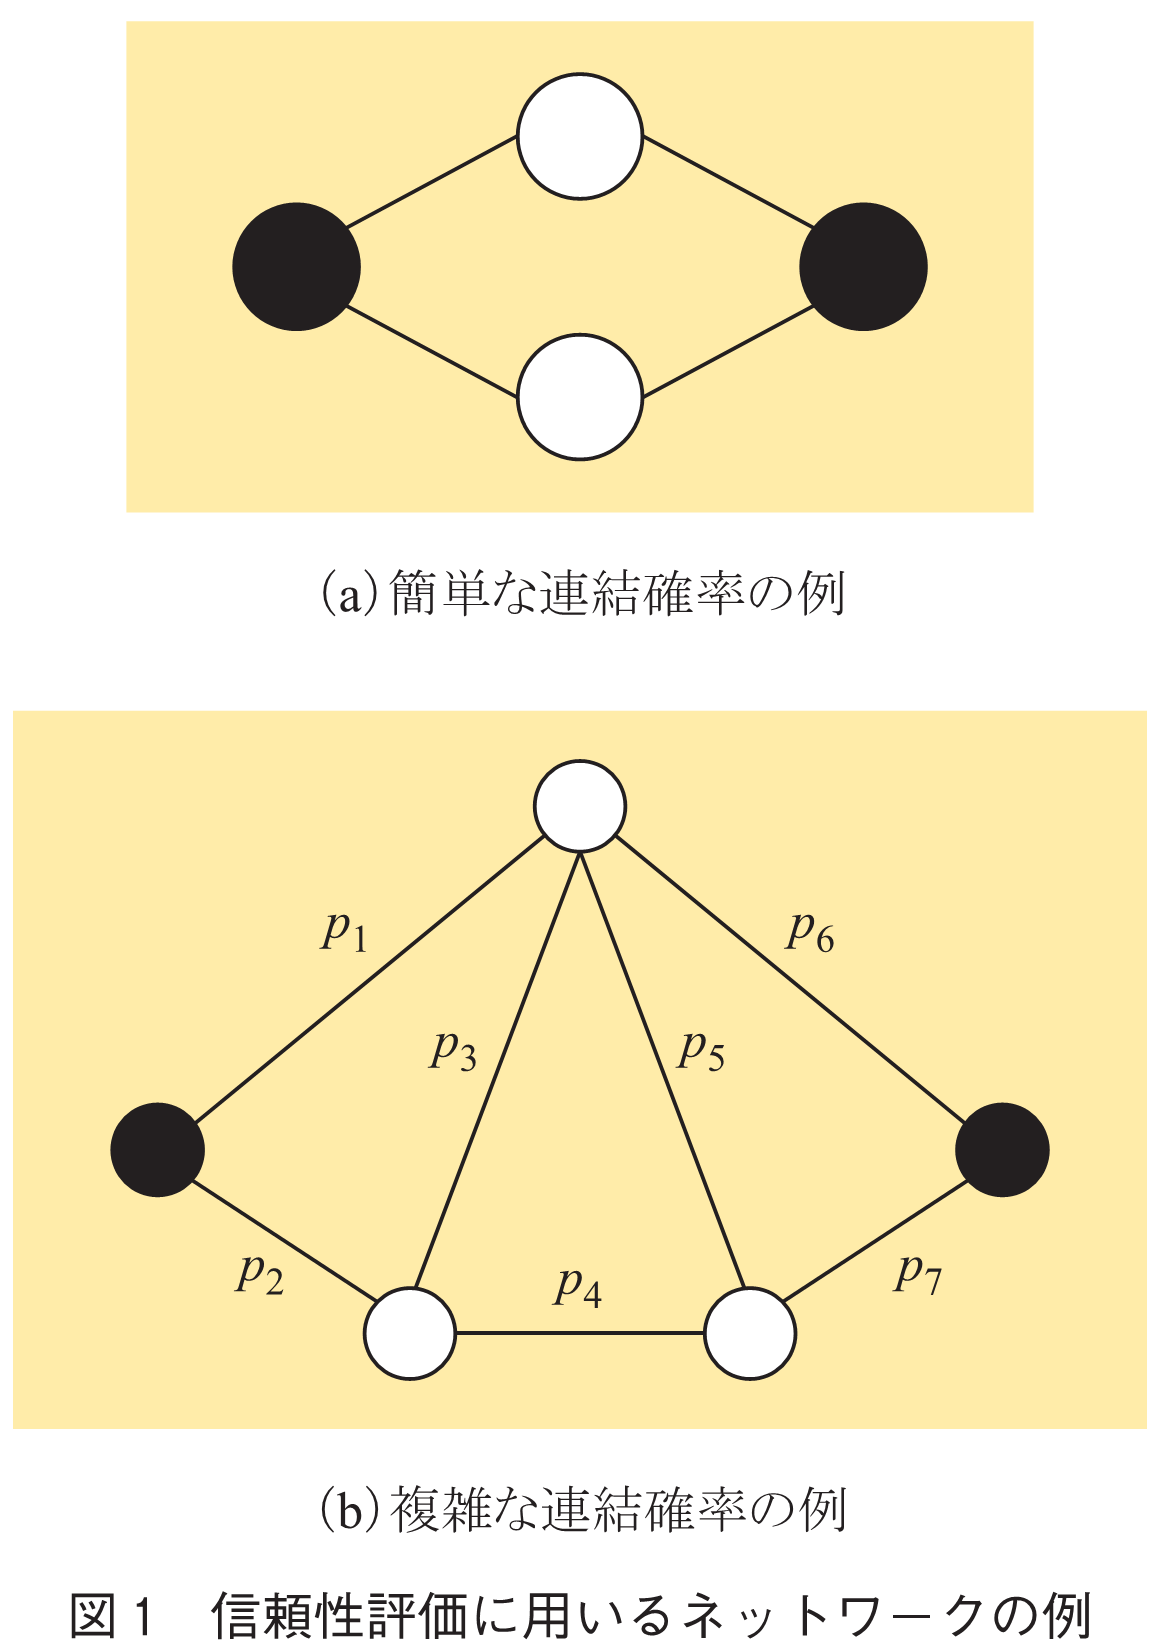 図1　信頼性評価に用いるネットワークの例